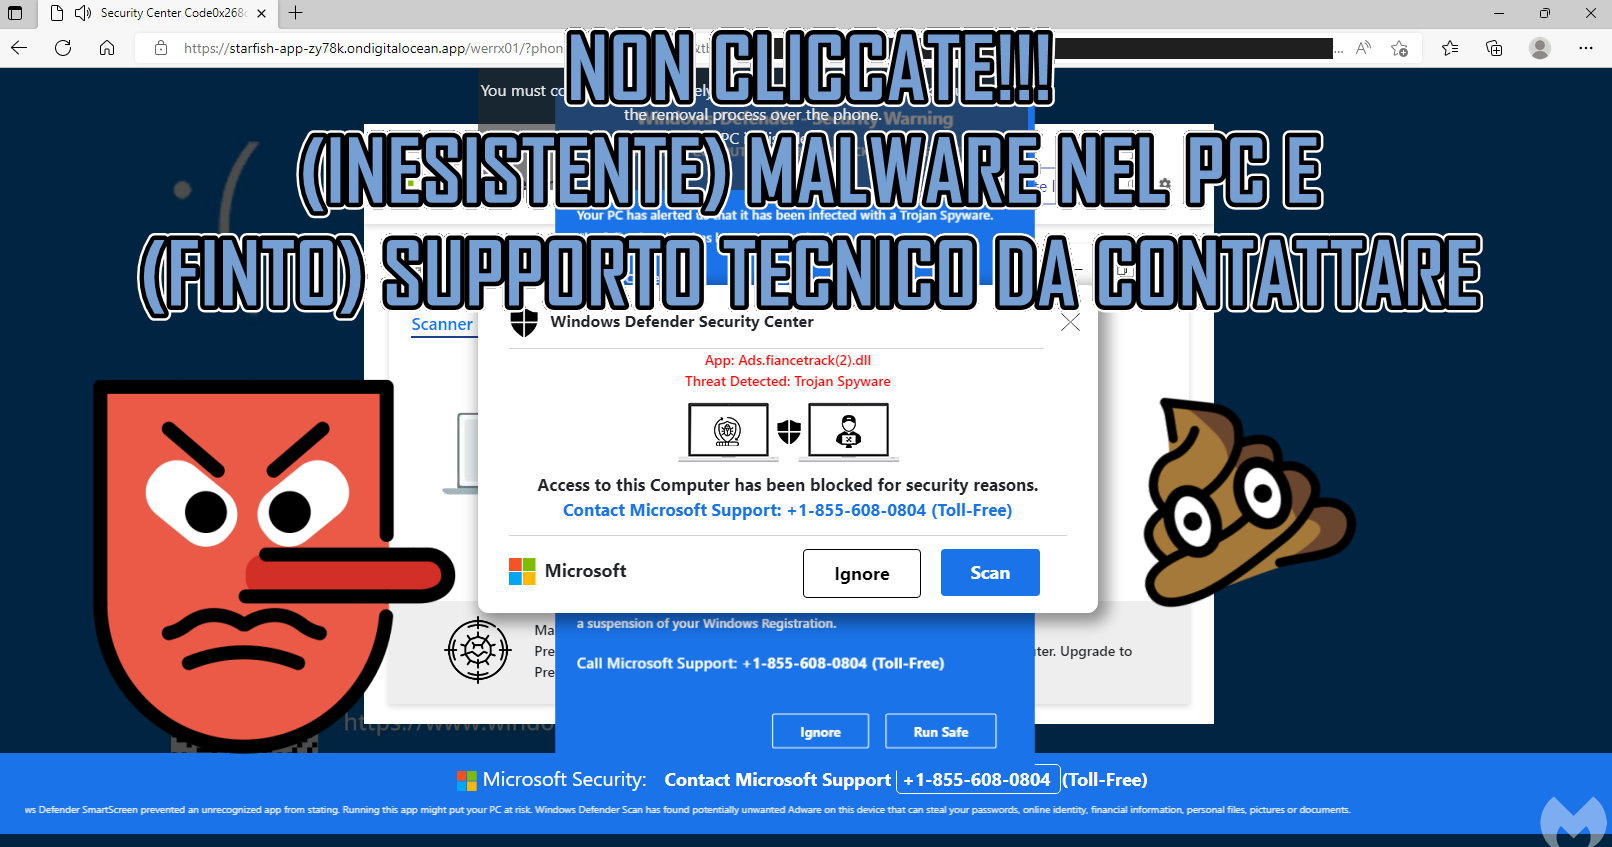 Pagine Web di Malware con (finto) Supporto Tecnico da Contattare